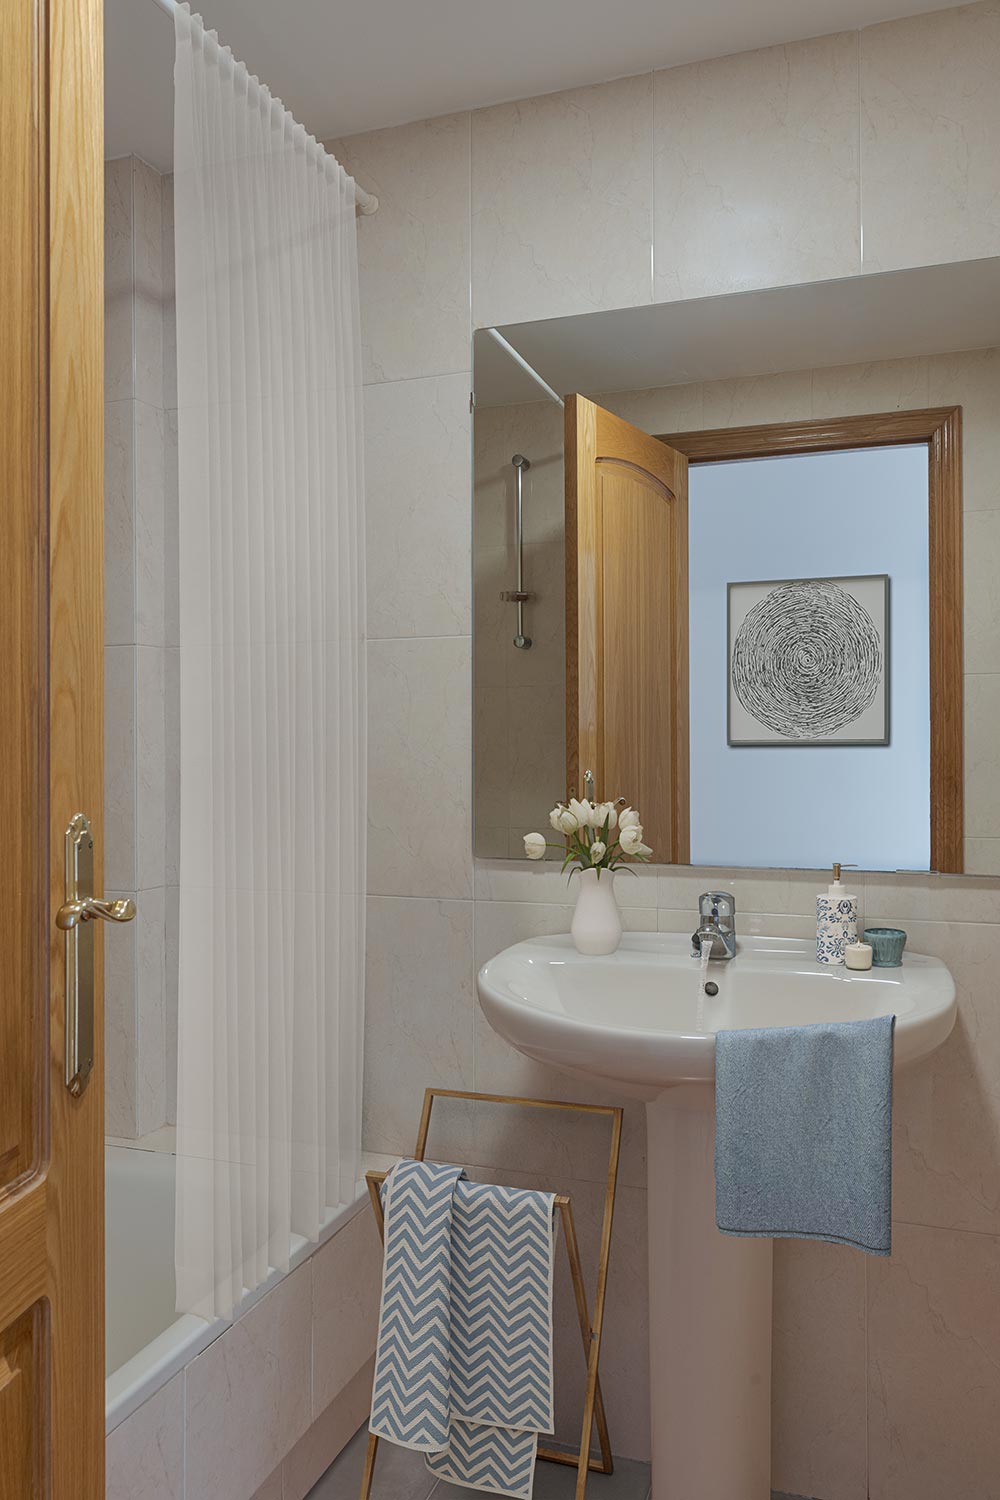 Baño con un lavabo de pedestal, un espejo con marco de madera, una bañera con cortina blanca y detalles decorativos como flores y una toalla de mano con patrón de chevron en un toallero de madera